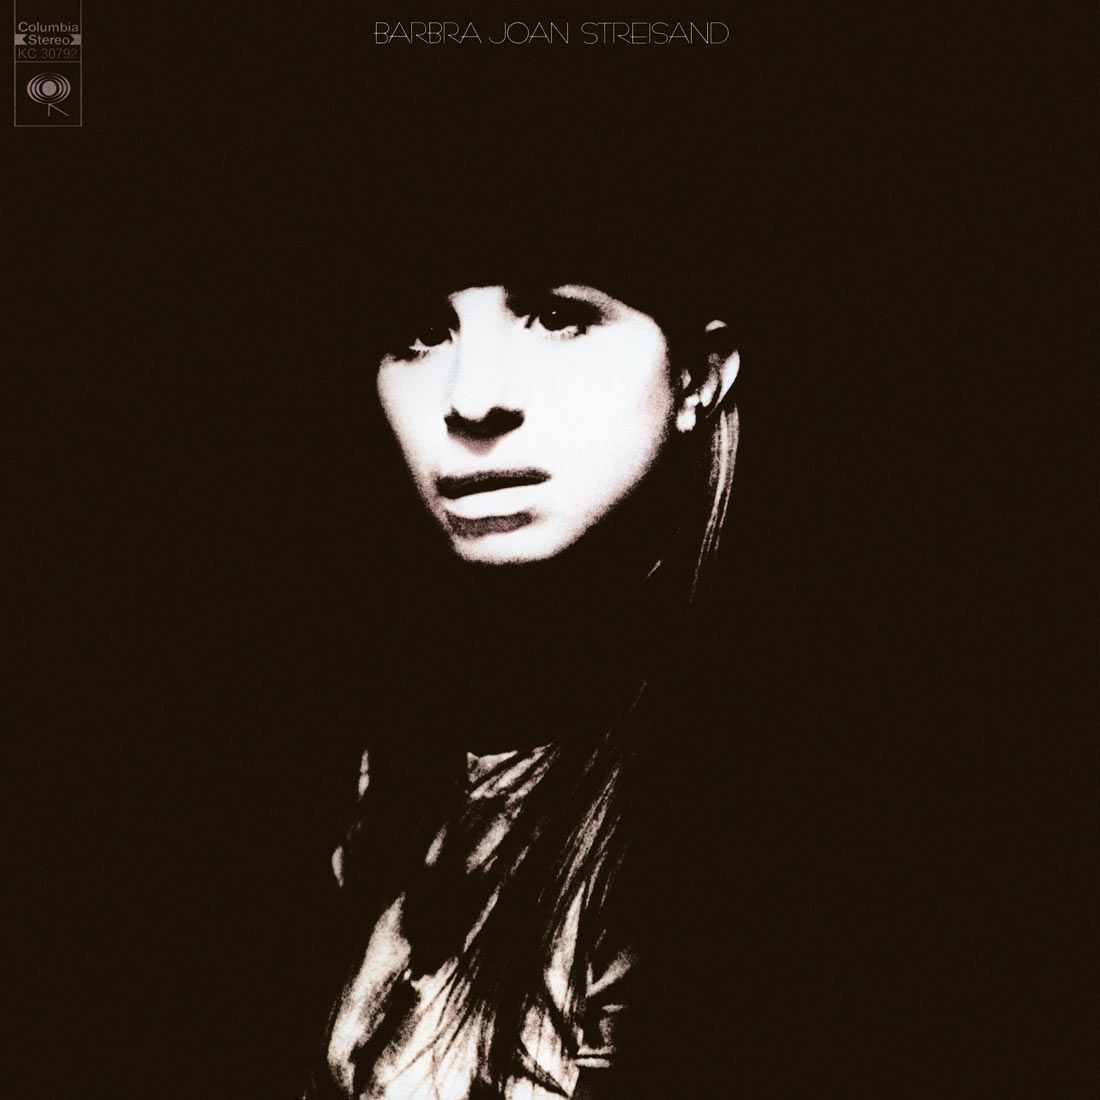 Barbra Joan Streisand original album, LP cover. Scan by: Kevin Schlenker.